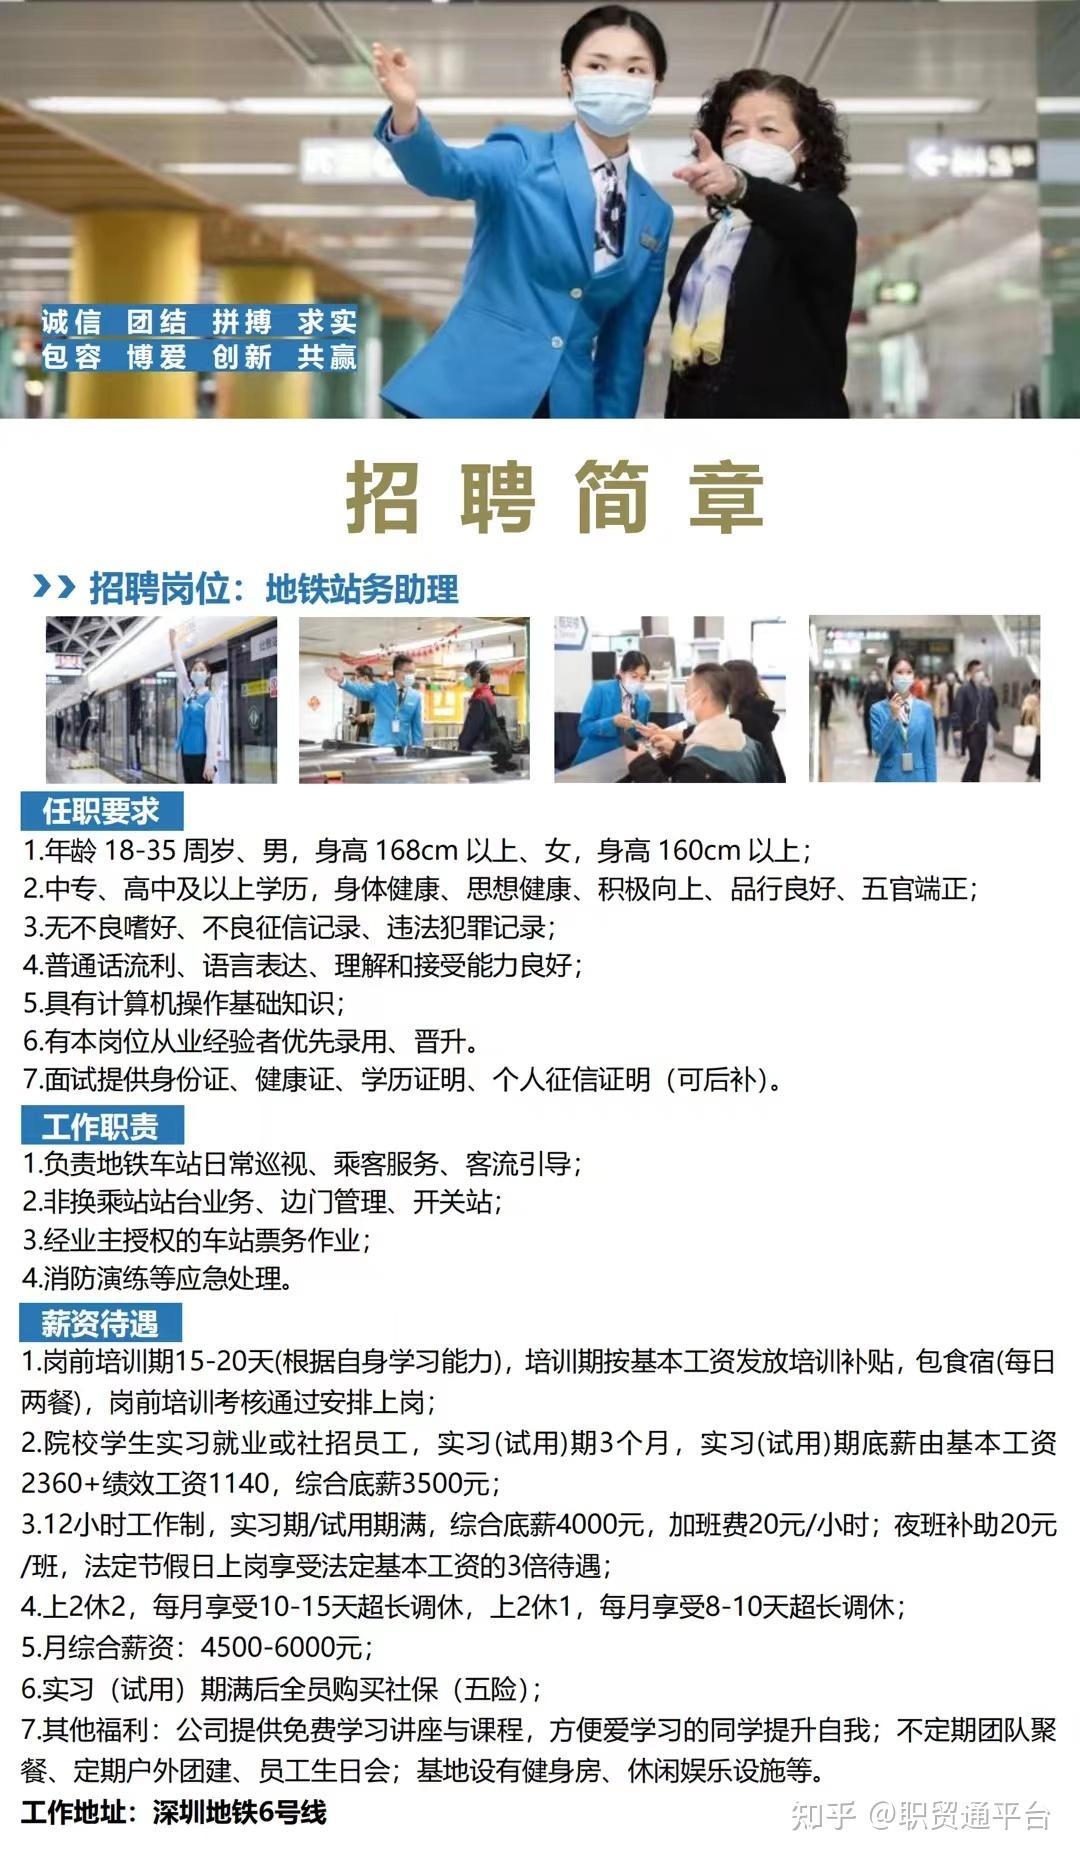 广州地铁设计研究院股份有限公司最新招聘_一览·铁路英才网